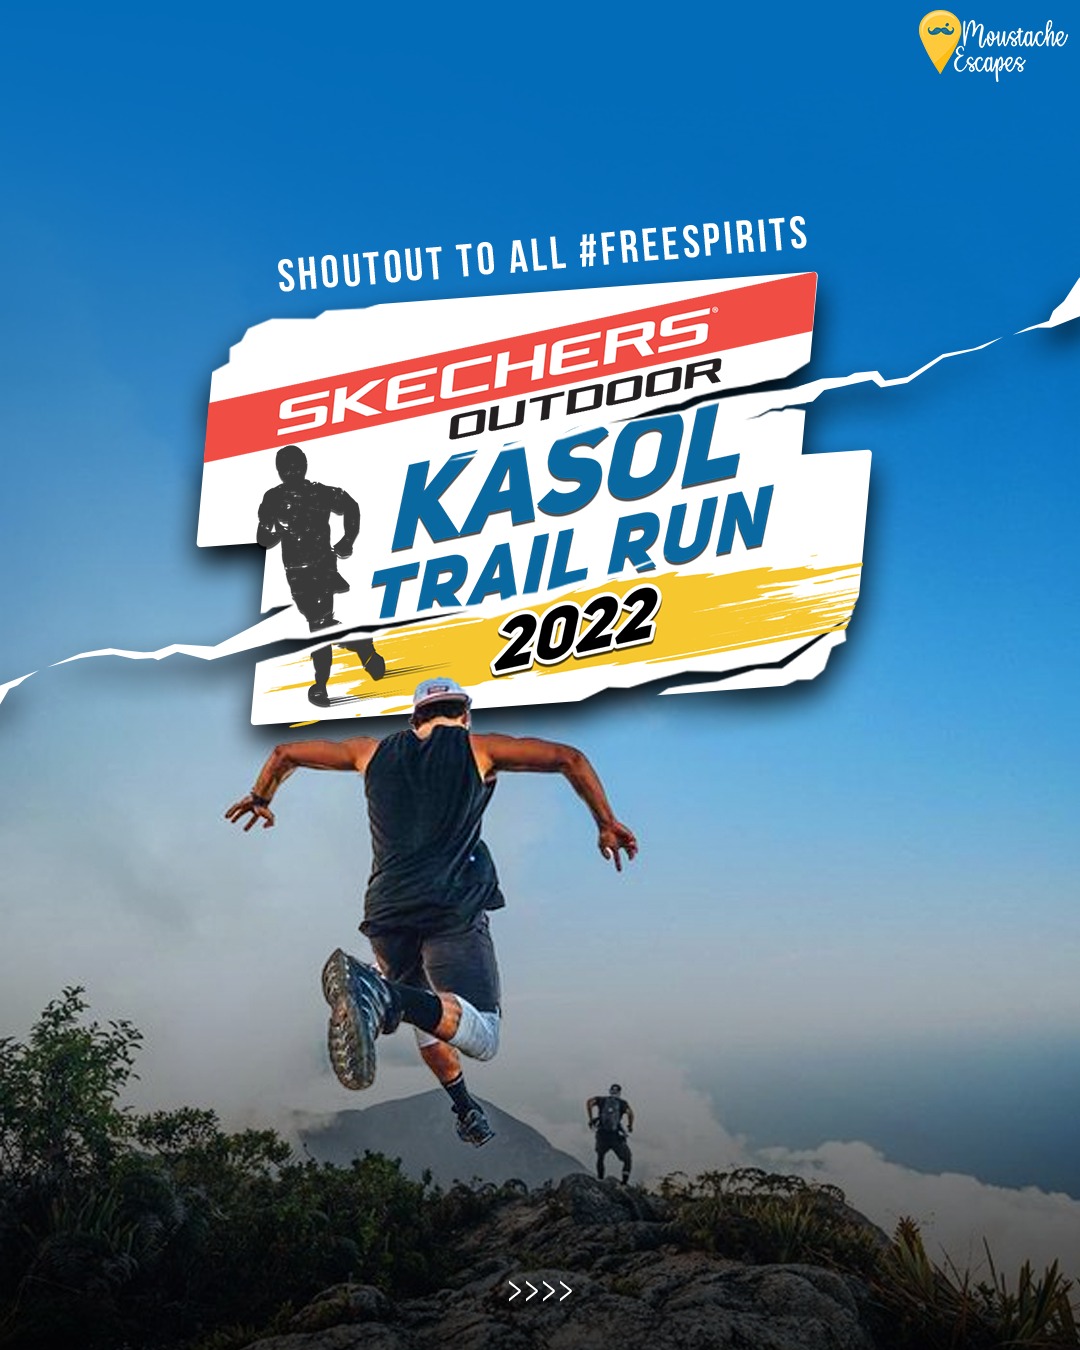 Kasol Trail Run